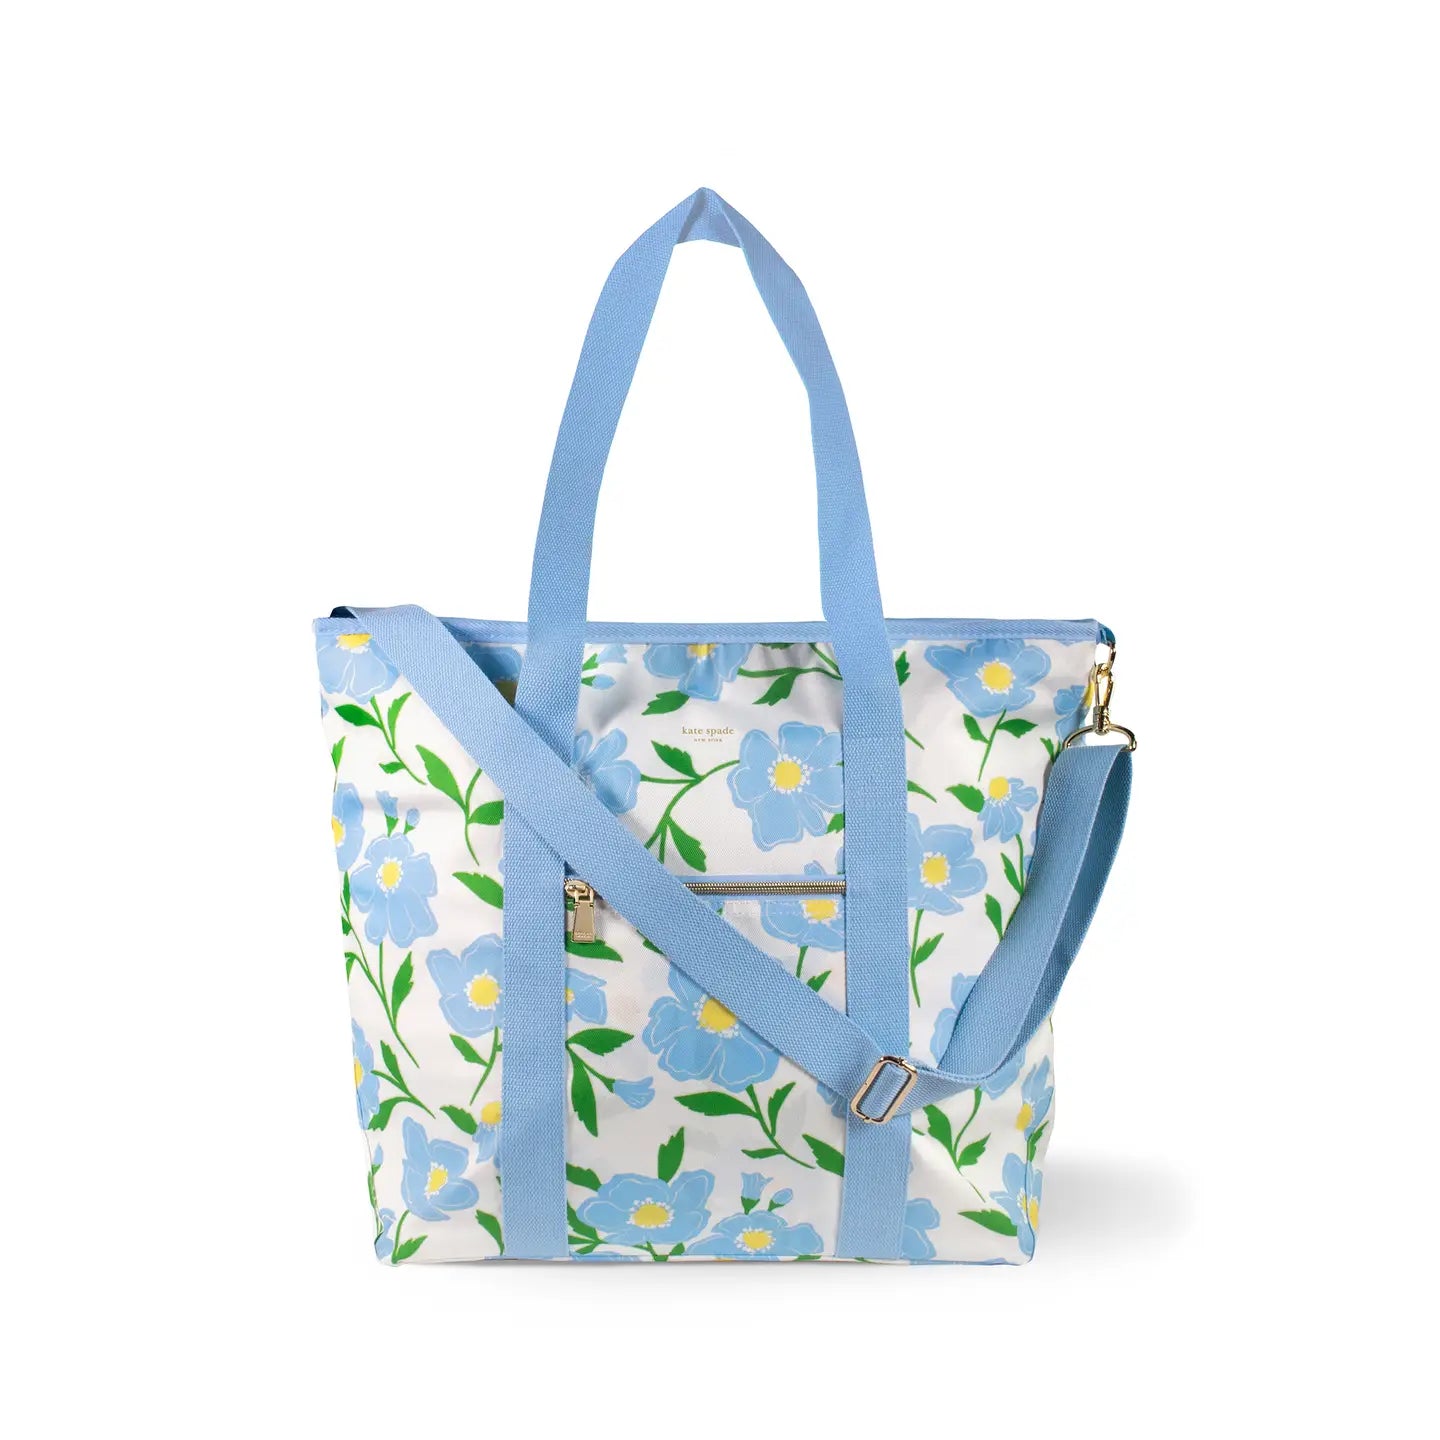 Cooler Bag in Sunshine Floral - The Preppy Bunny